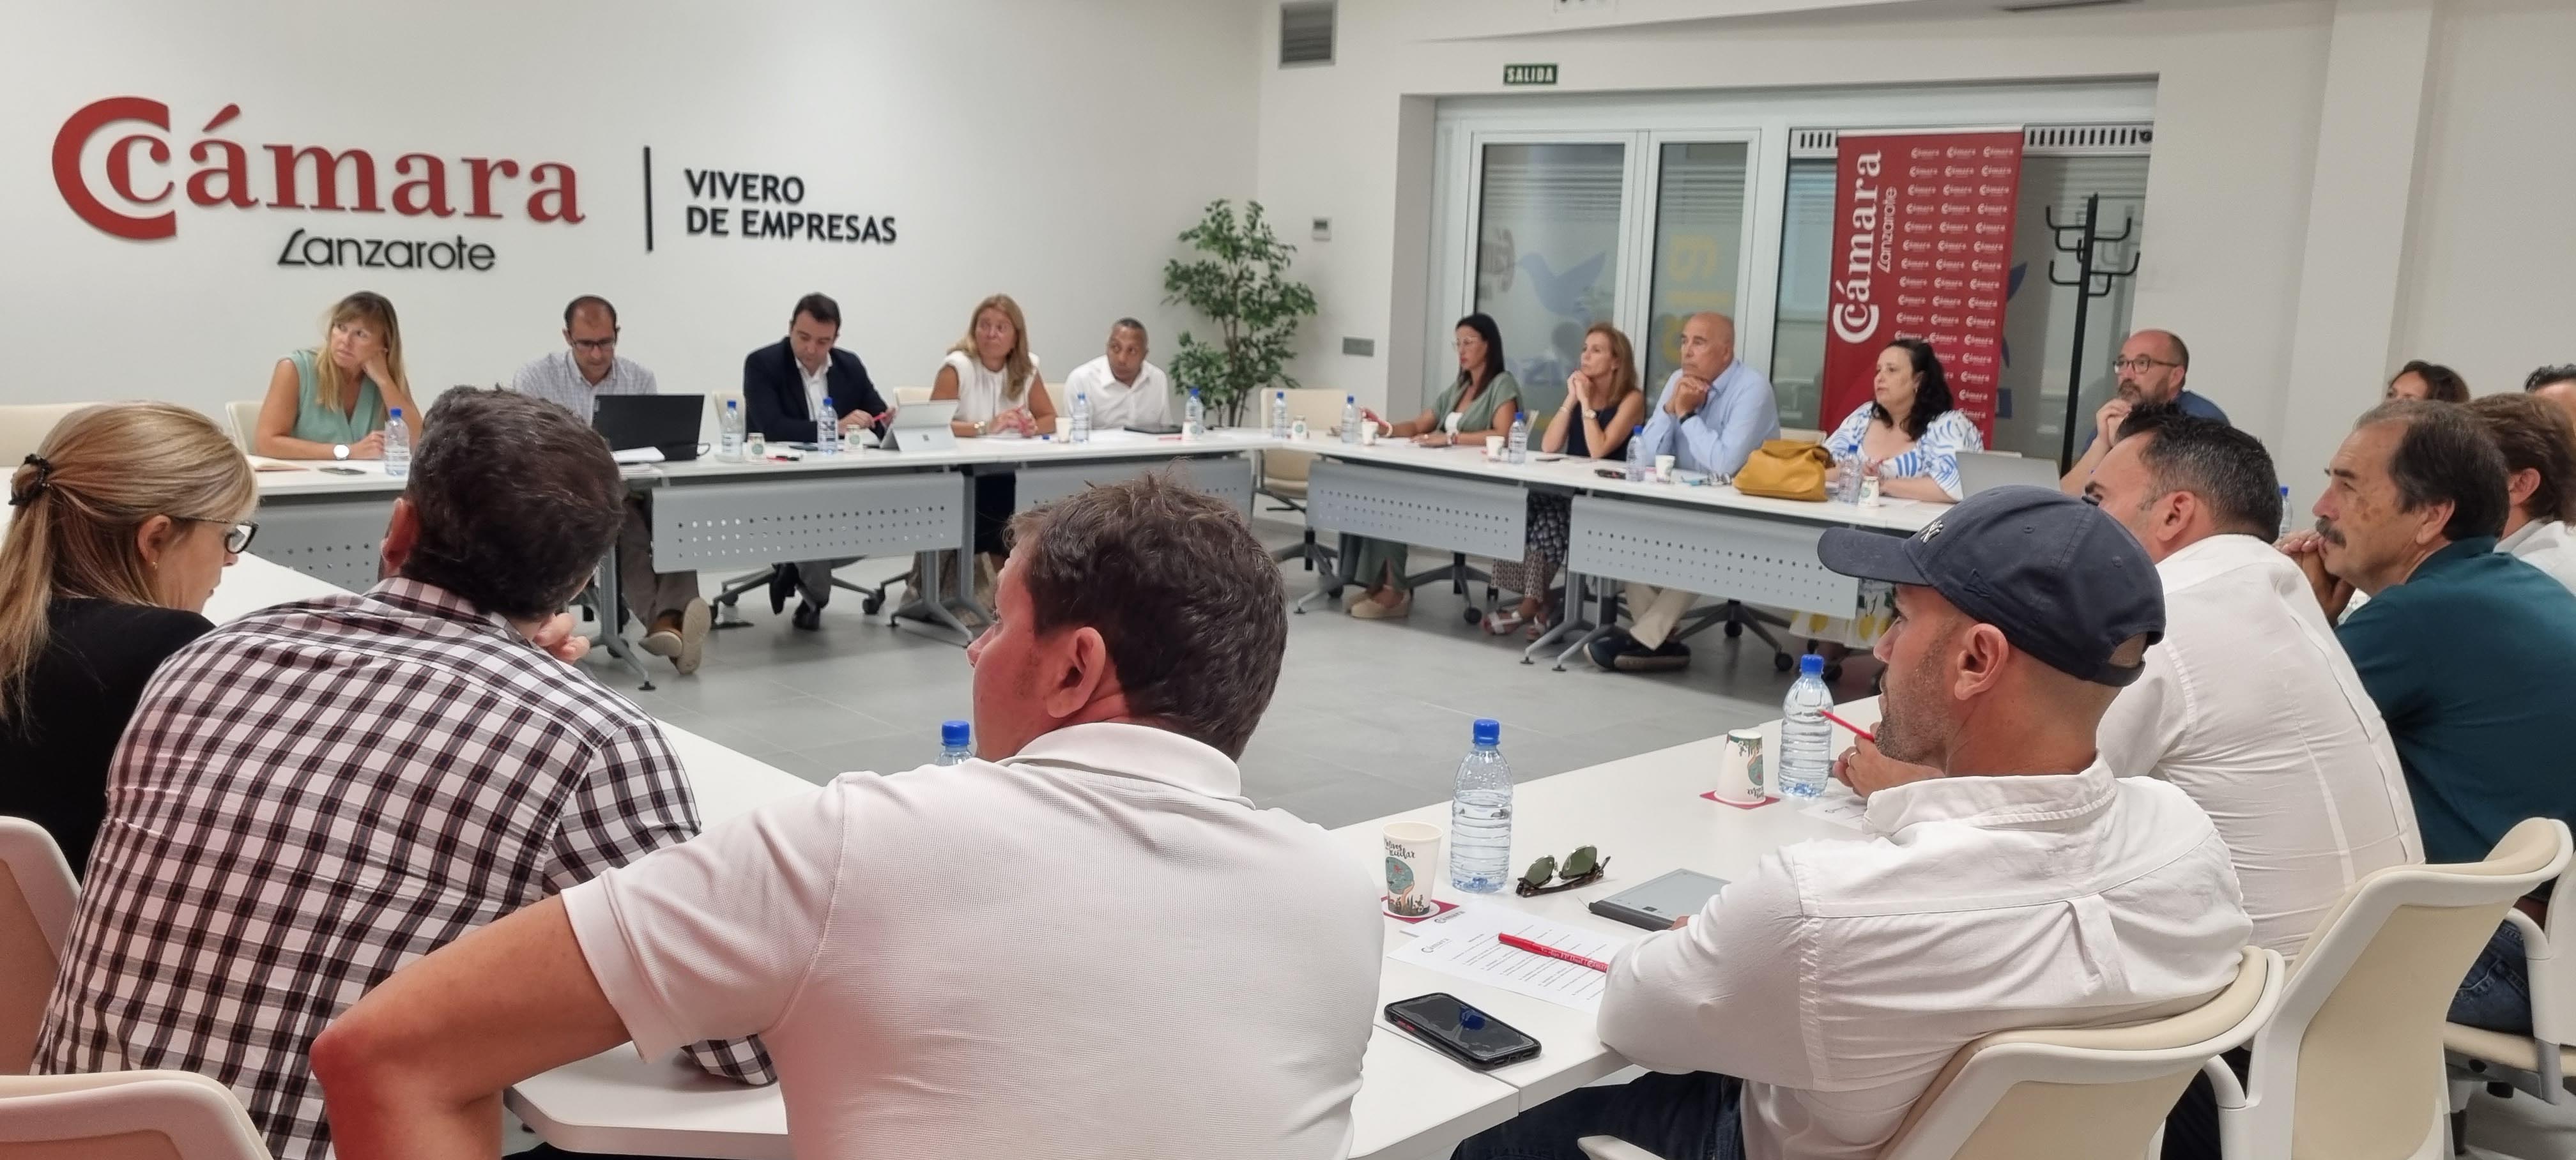 La Cámara de Comercio de Lanzarote crea cuatro nuevas comisiones